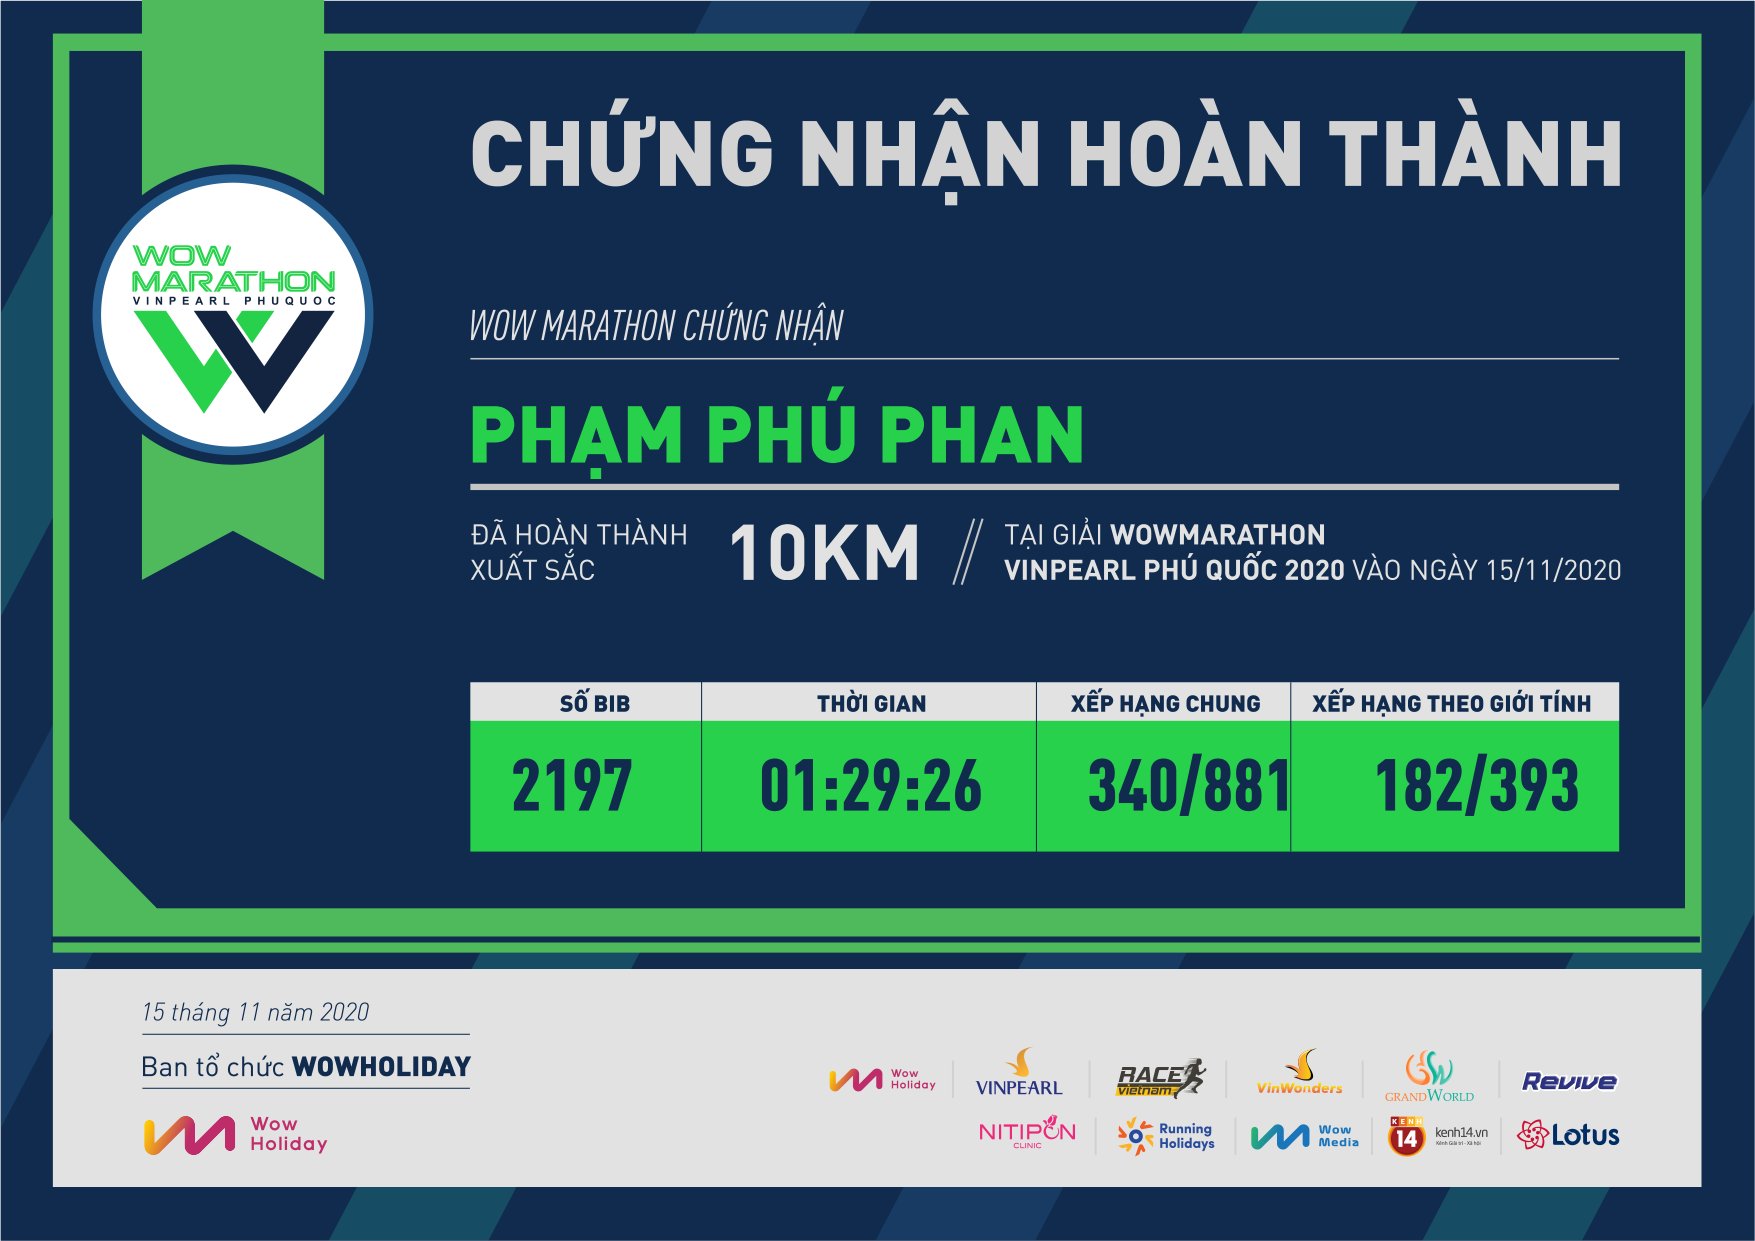 2197 - Phạm Phú Phan